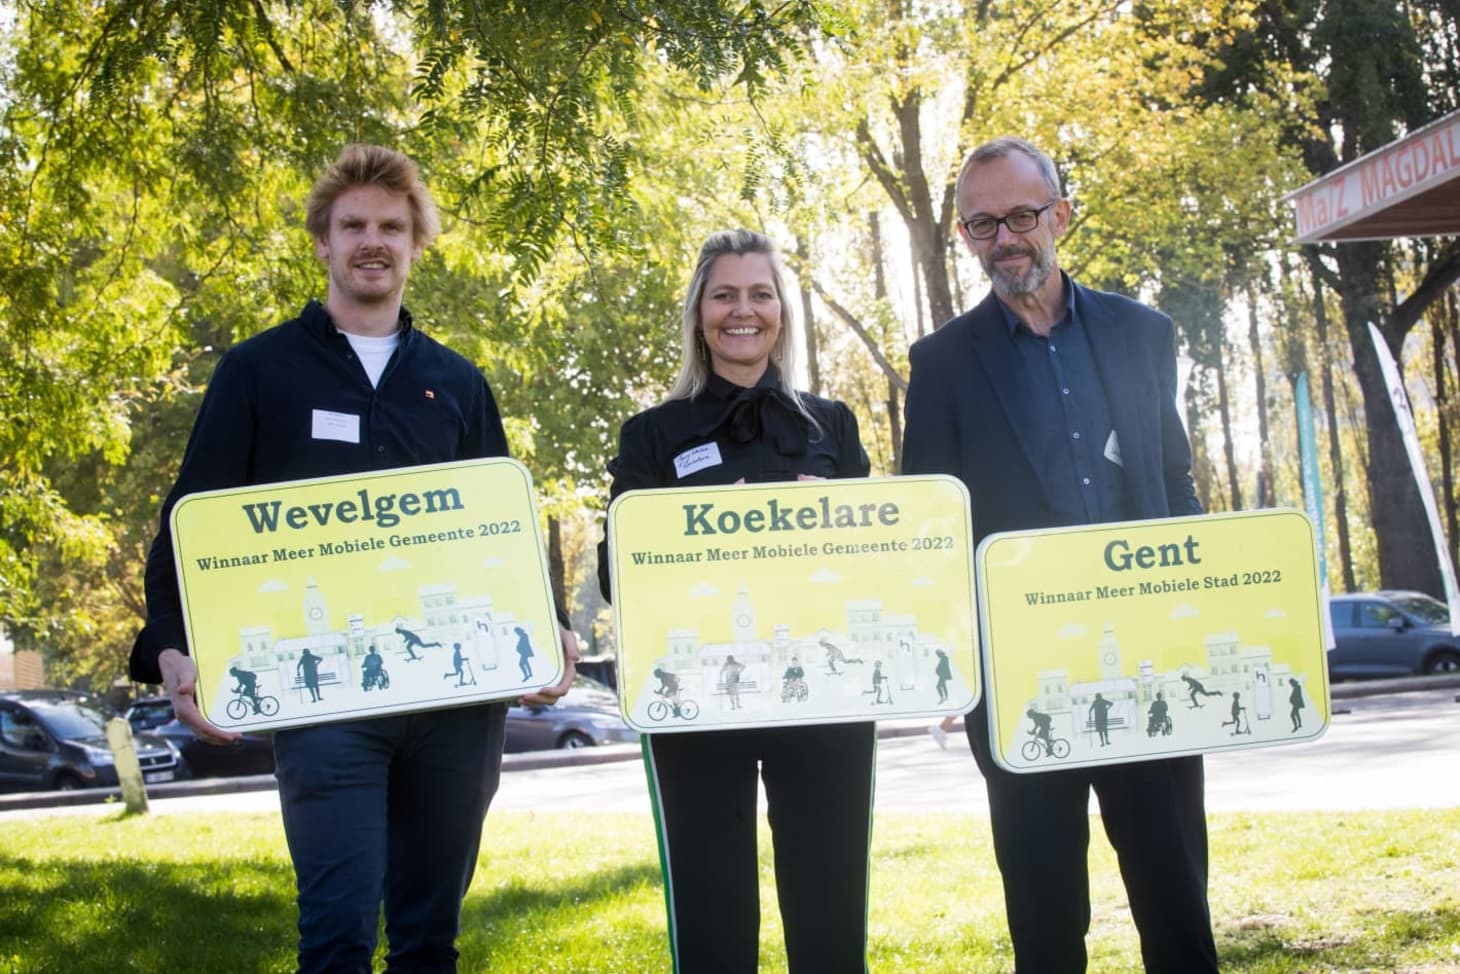 3 mensen poseren met een bord waarop de naam van hun gemeente of stad (Wevelgem, Koekelare, Gent) staat, samen met de tekst 'winnaar meer mobiele gemeente 2022'